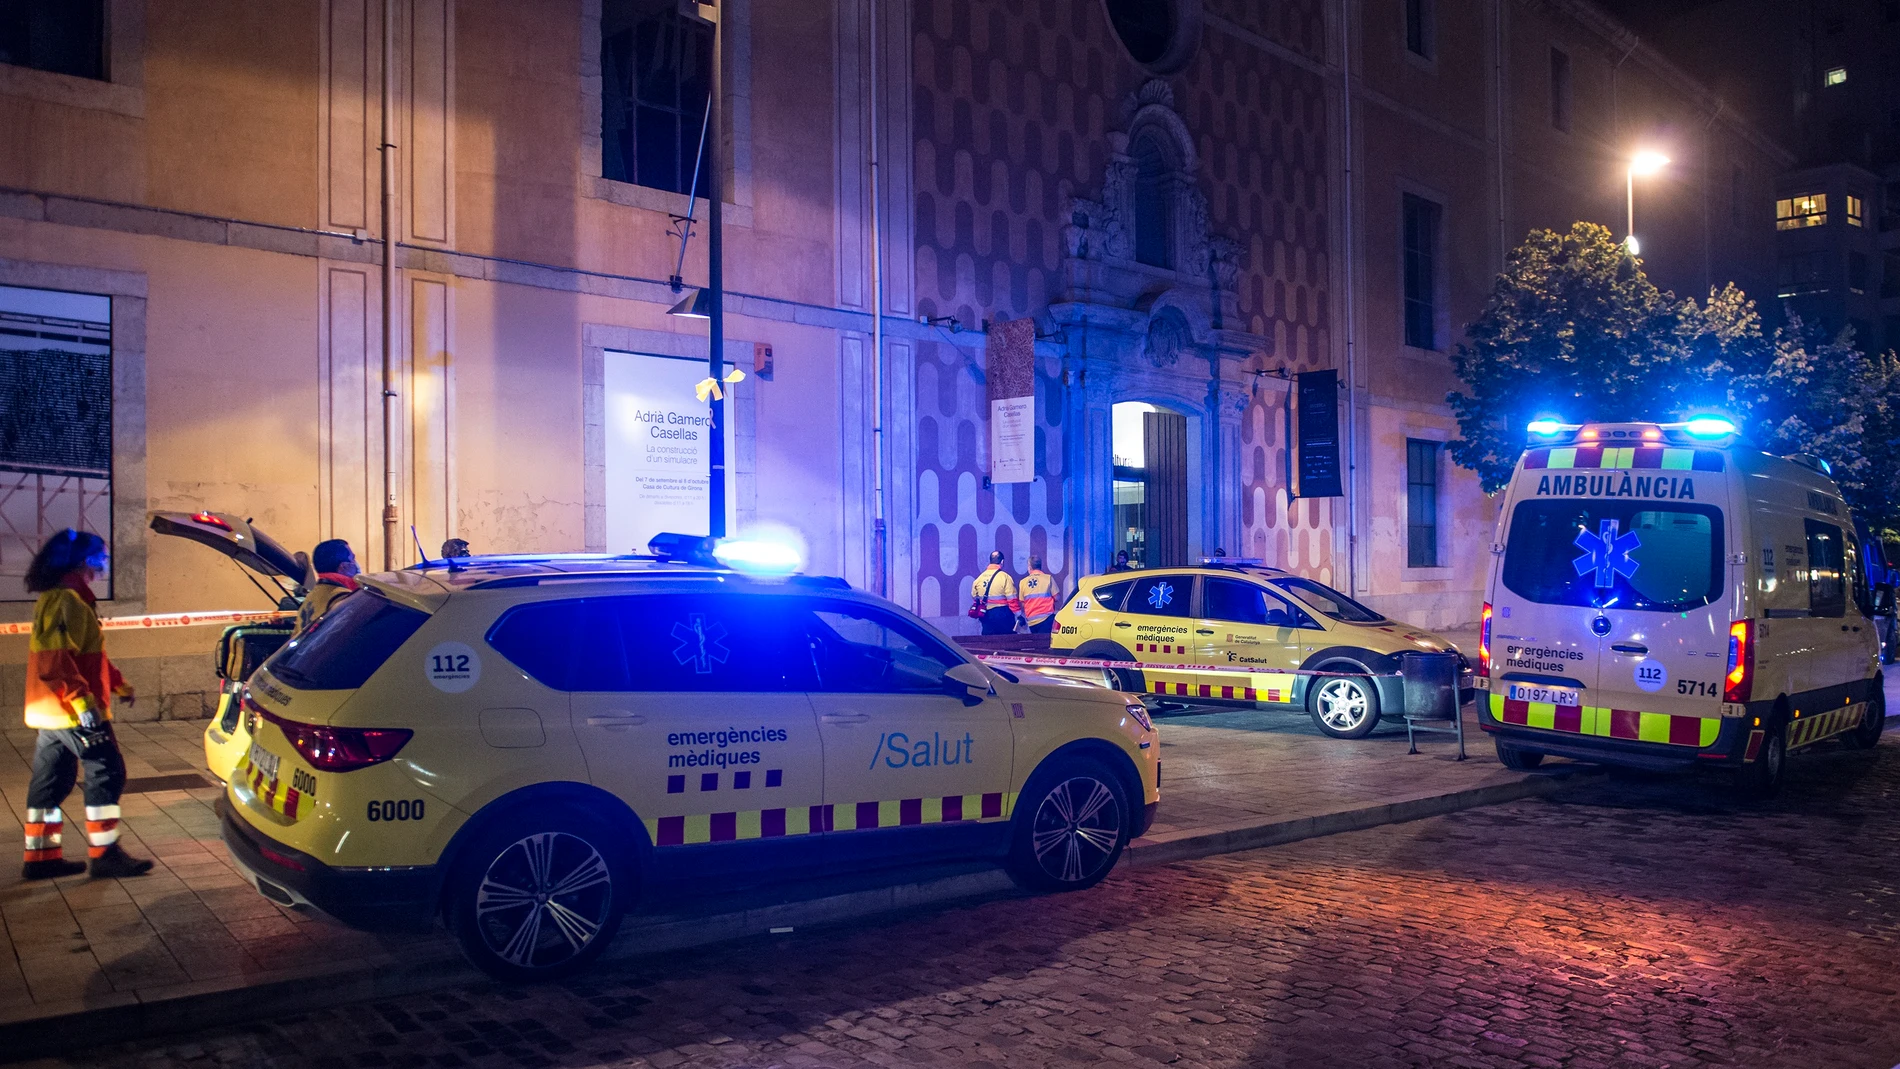 Vehículos de emergencias ante la Casa de Cultura de Girona tras la explosión de un bidón en el marco de una exhibición científica.GLORIA SANCHEZ - EUROPA PRESS30/09/2022